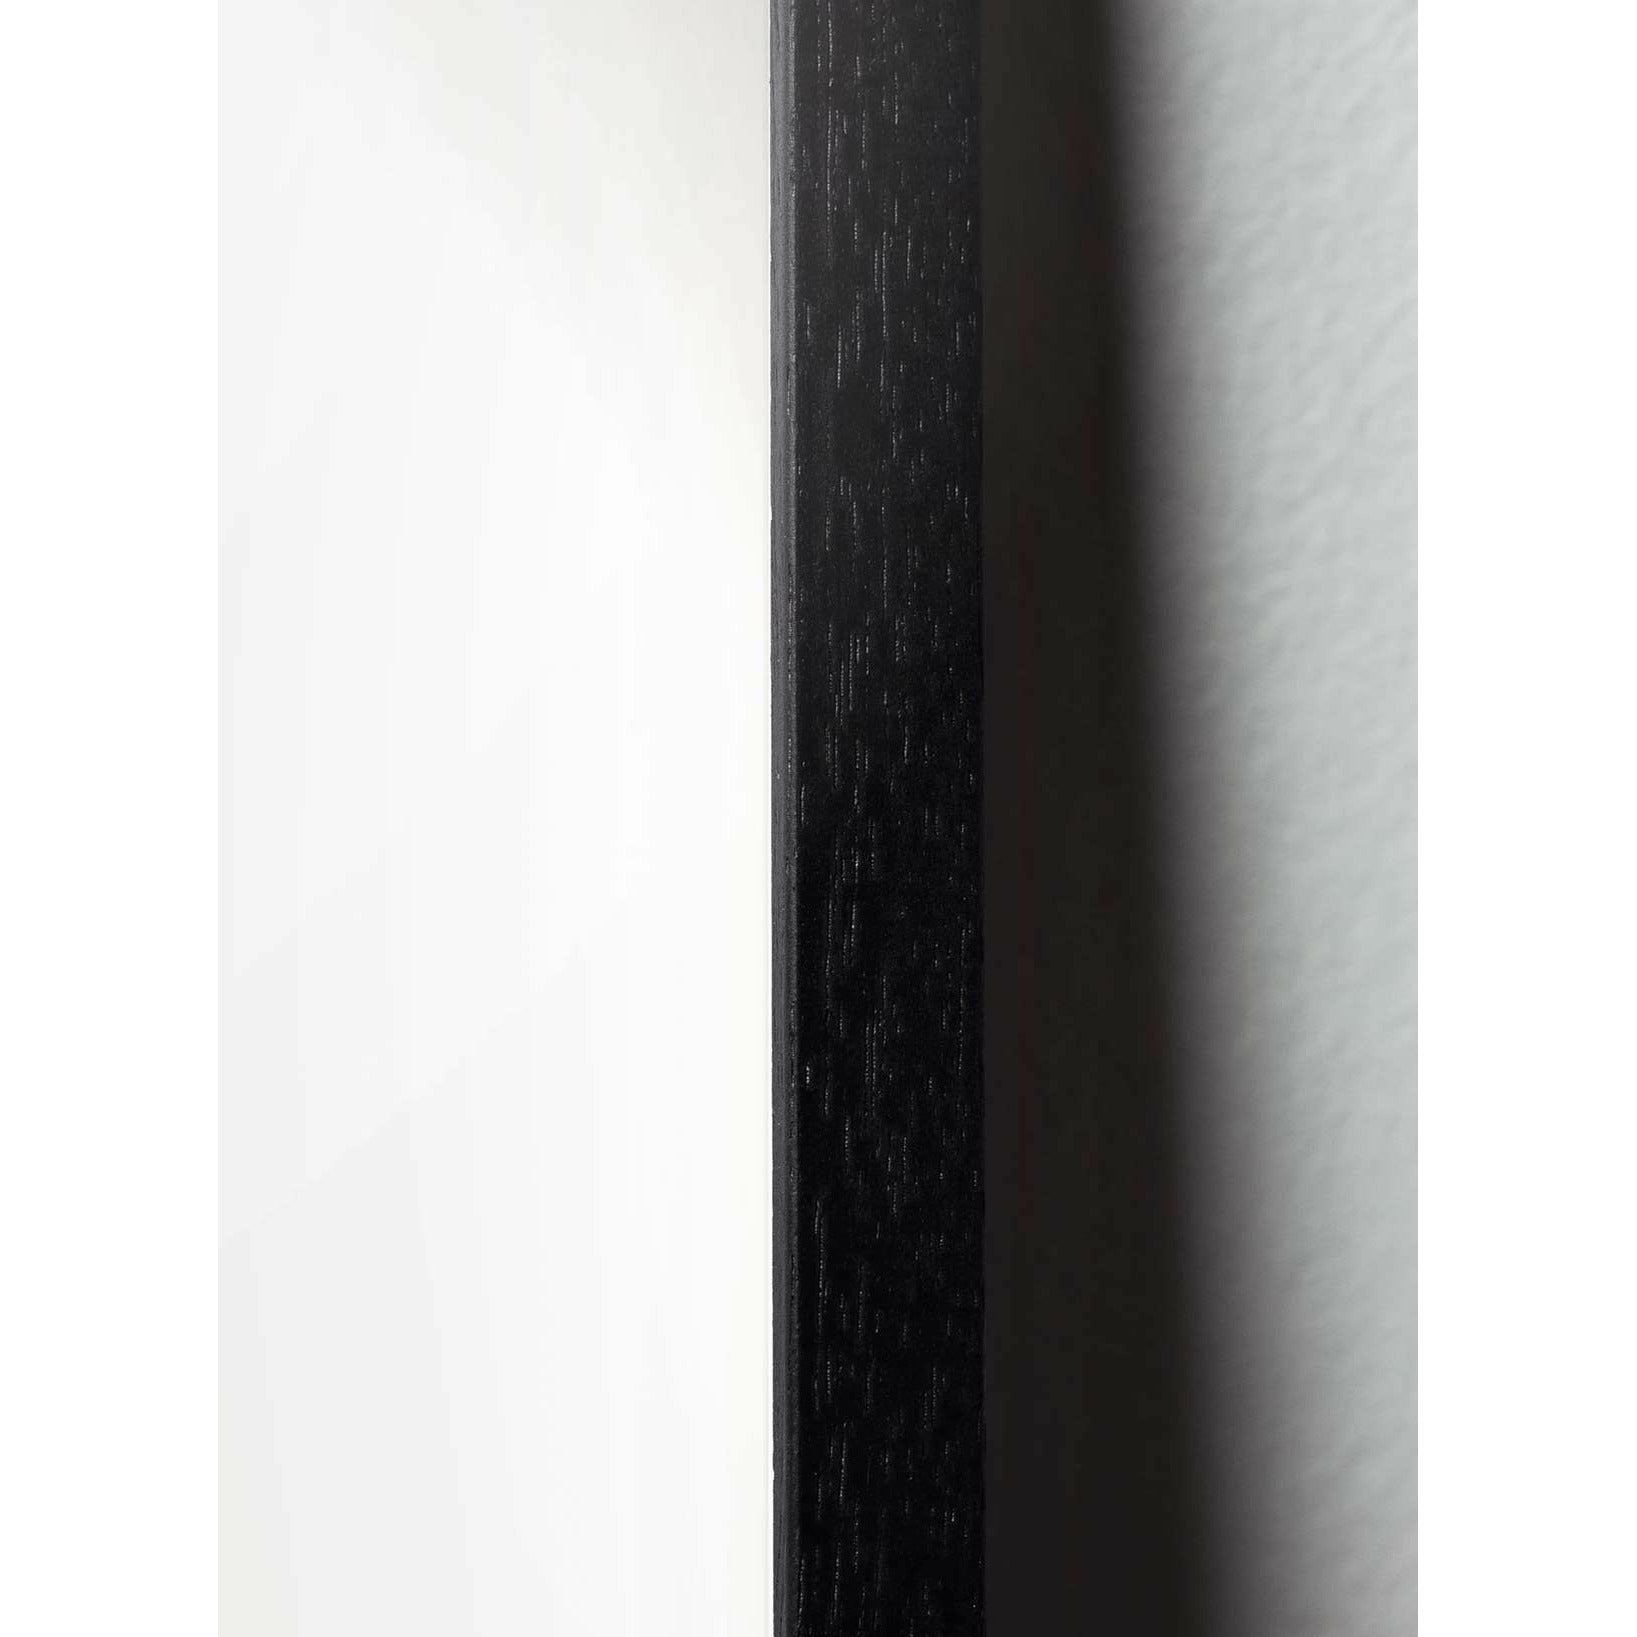 Brainchild Affiche de la ligne de cygne, cadre en bois laqué noir 70x100 cm, fond bleu